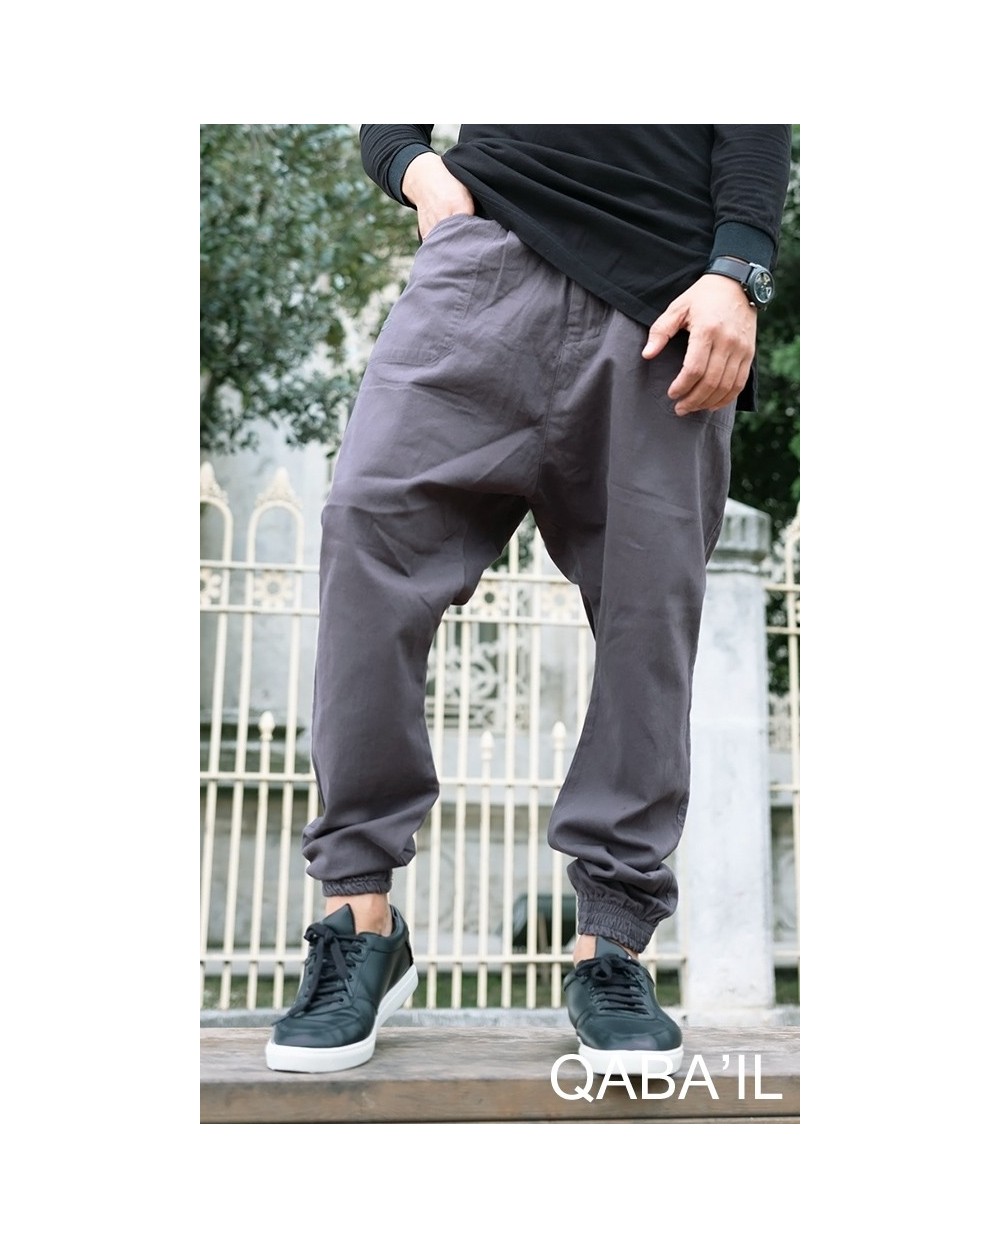 Sarouel pantalon Qaba'il 2019